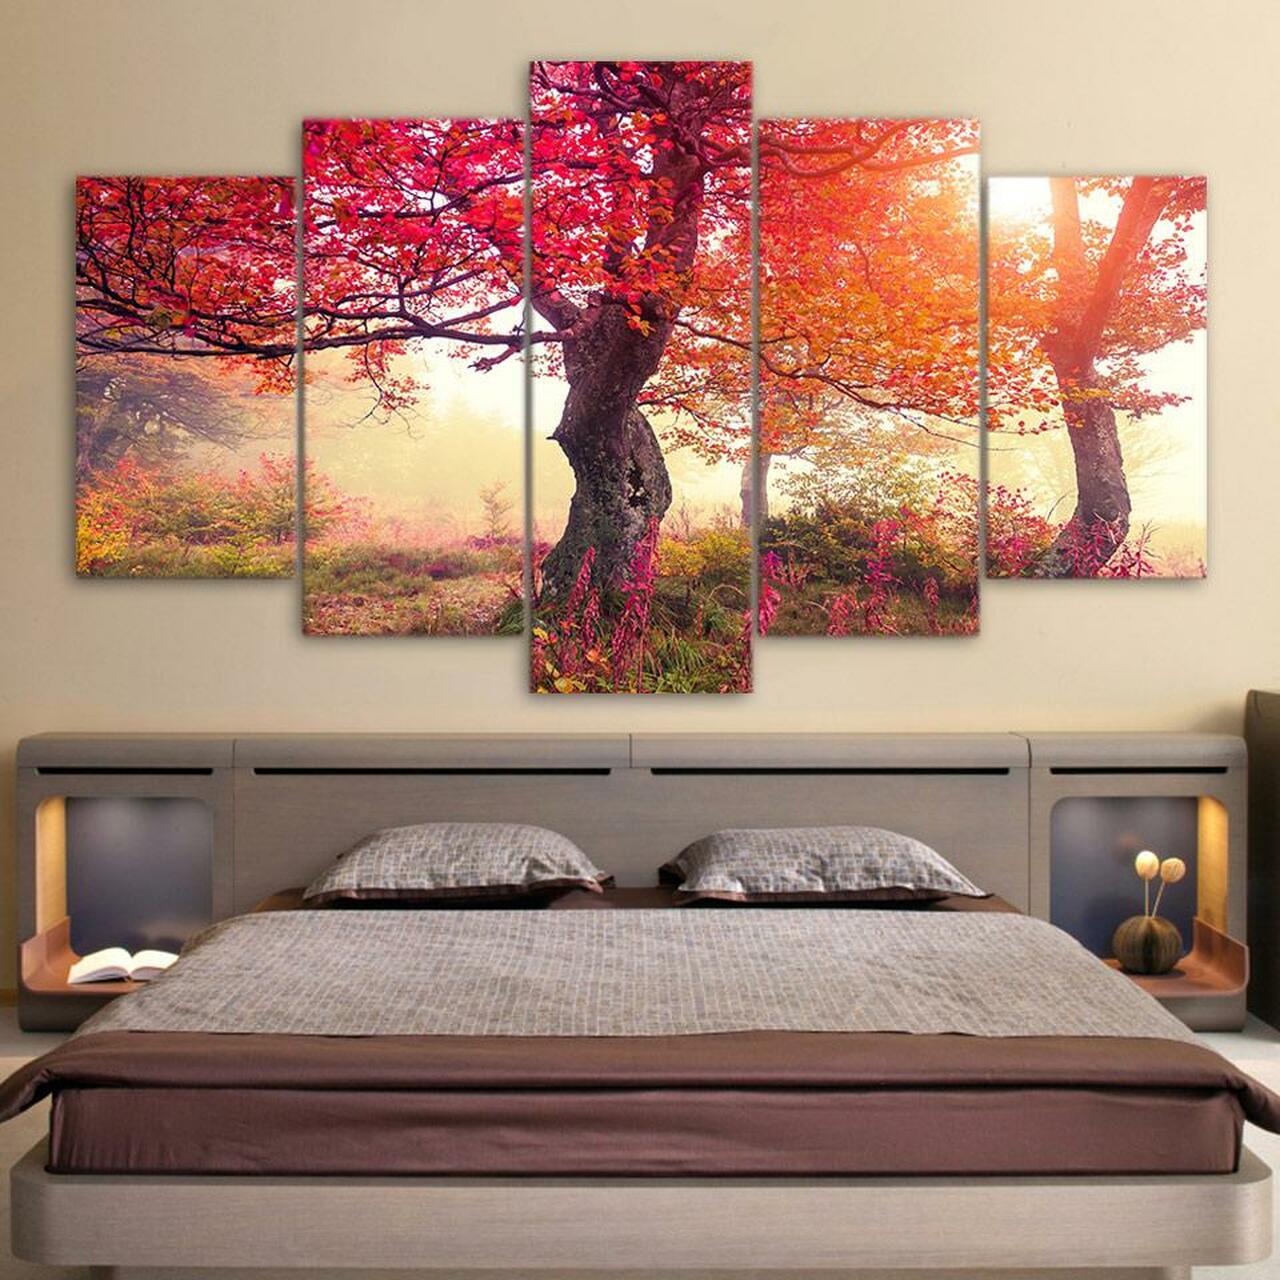 autumn red leaves 5 pices peinture sur toile impression sur toile toile art pour la dcoration intrieure8vf9c